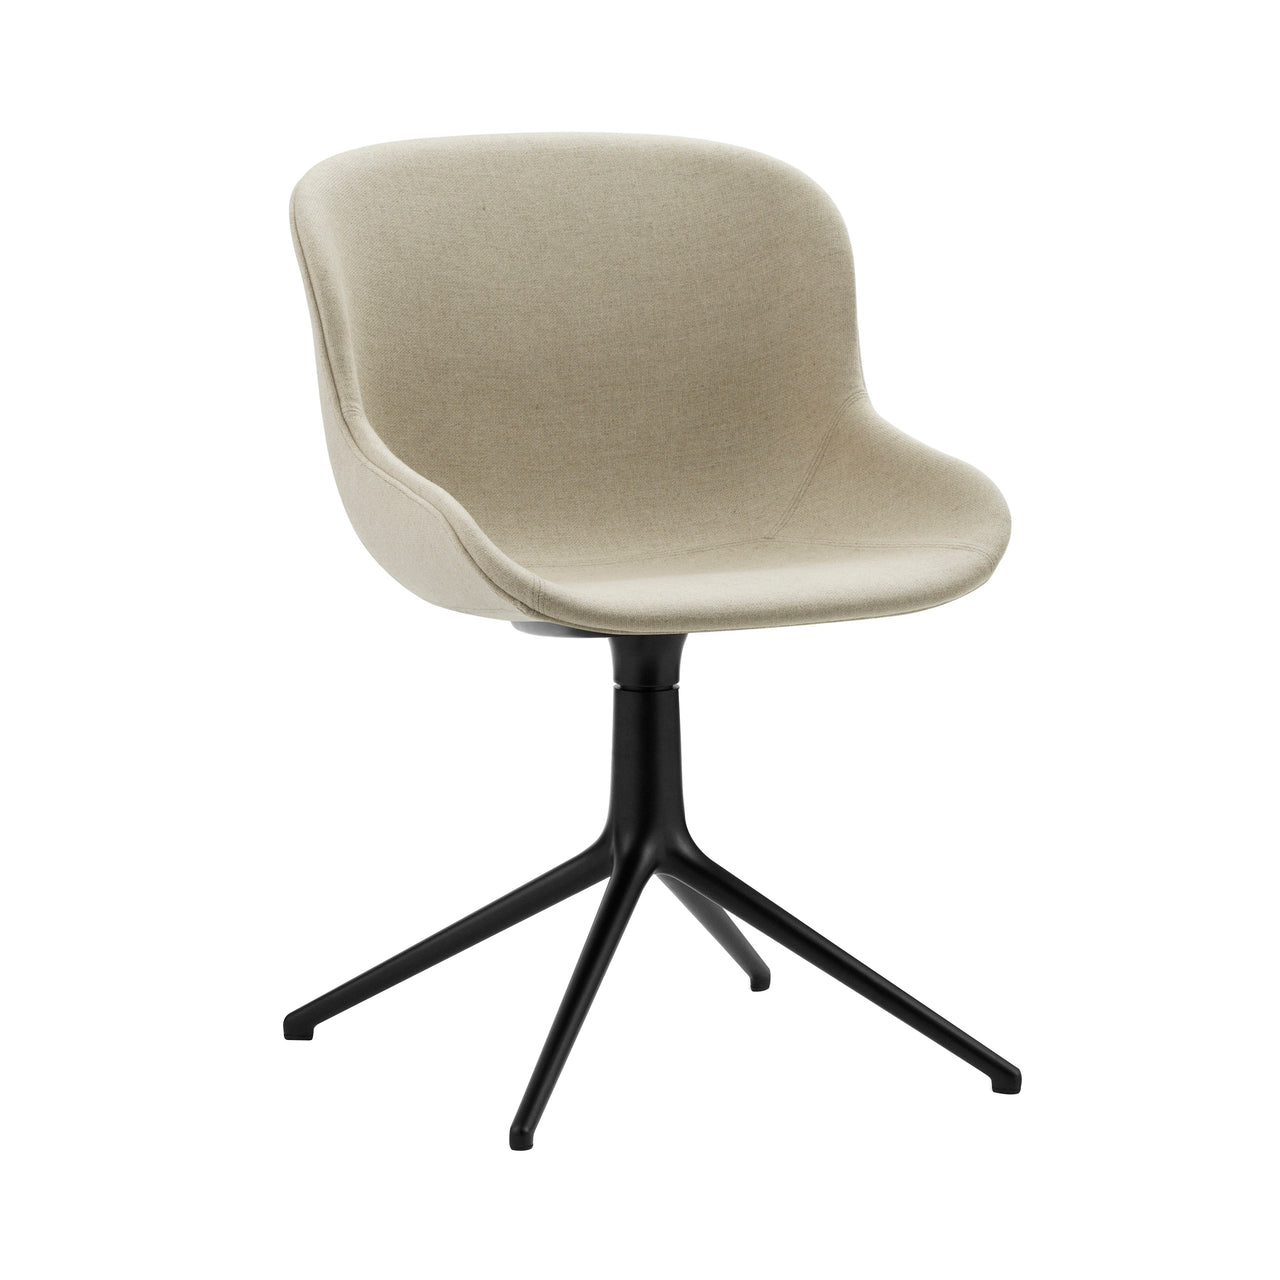 Hyg 4 Legs Swivel Chair: Fully Upholstered + Black Aluminum